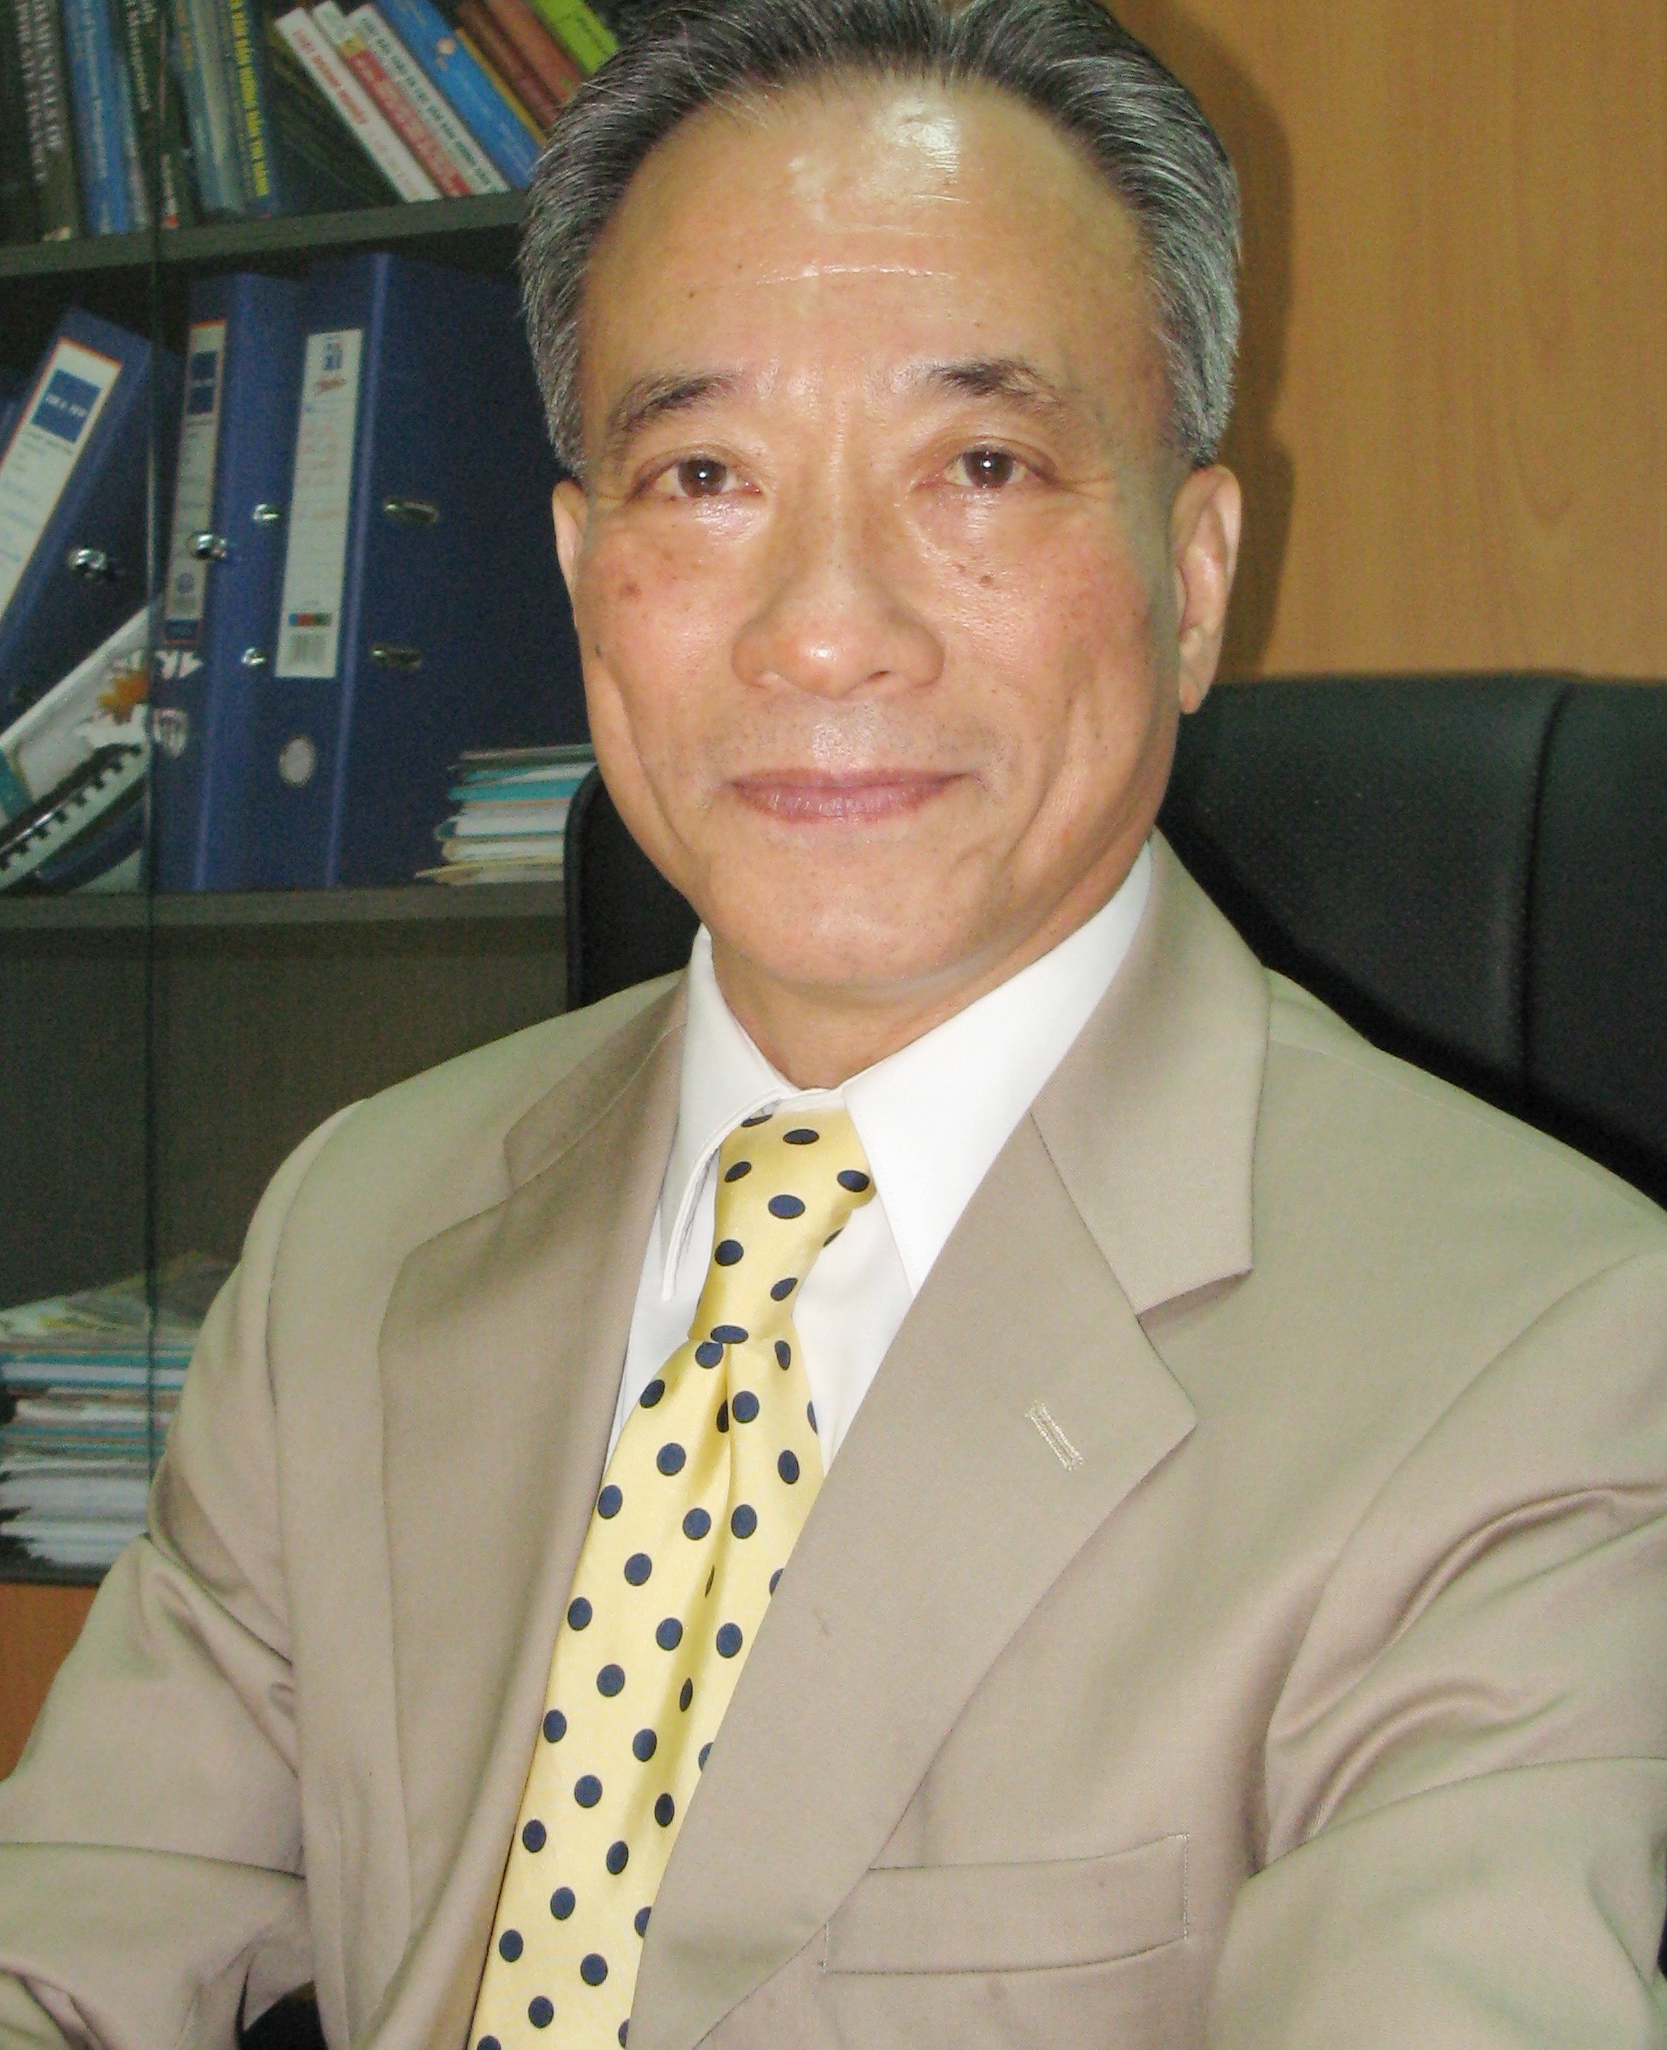 Tiến sỹ Nguyễn Trí Hiếu, chuyên gia tài chính ngân hàng. (Ảnh nhân vật cung cấp)